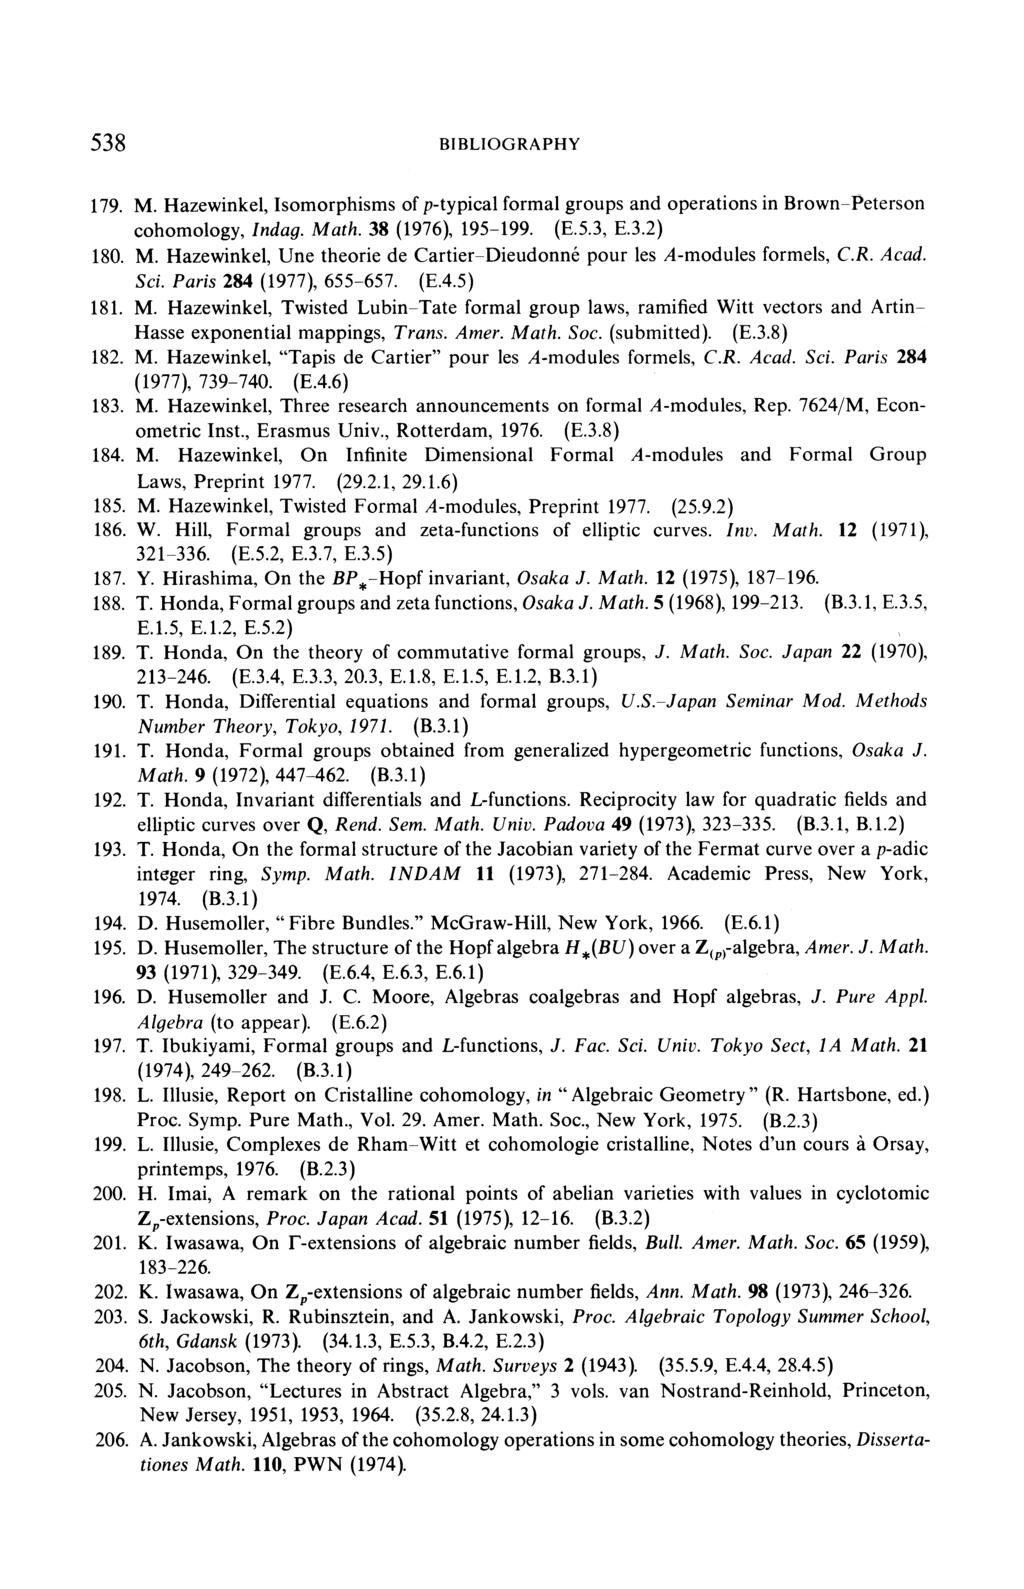 M. Hazewinkel, Une théorie de Cartier-Dieudonné pour les A-modules formels, C.R. Acad. Sci. Paris 284 (1977), 655 657. (E.4.5) N. Jacobson, The theory of rings, Math.